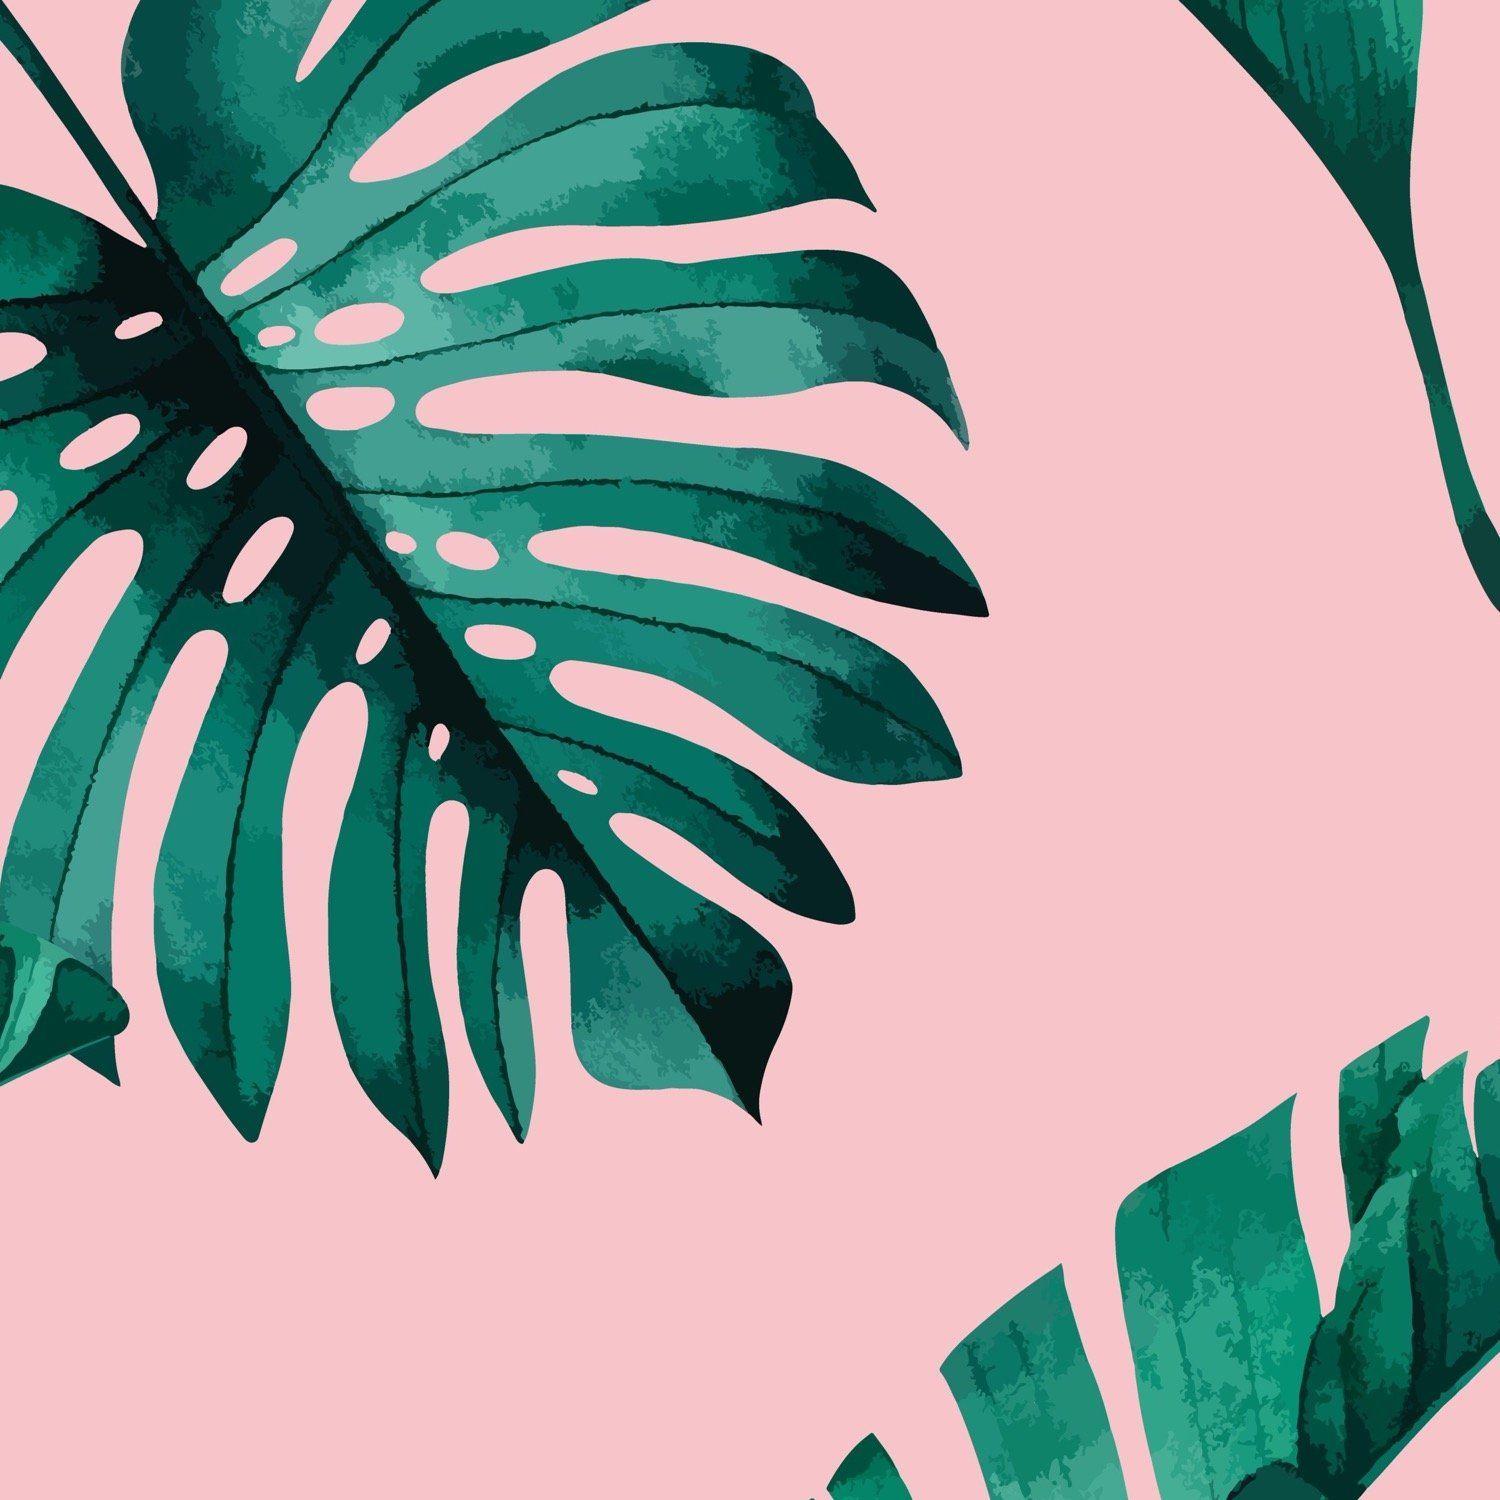 Hãy nhấn vào ảnh liên quan đến từ khóa Tropic Pink Wallpapers để trải nghiệm một trải nghiệm tuyệt vời với những hình nền tuyệt đẹp, sắc màu tươi sáng và sống động. Hãy thực sự đắm chìm vào không gian ảo này với những bức hình đầy đủ hương vị của mùa hè và nét cực kì đặc trưng của châu Á.